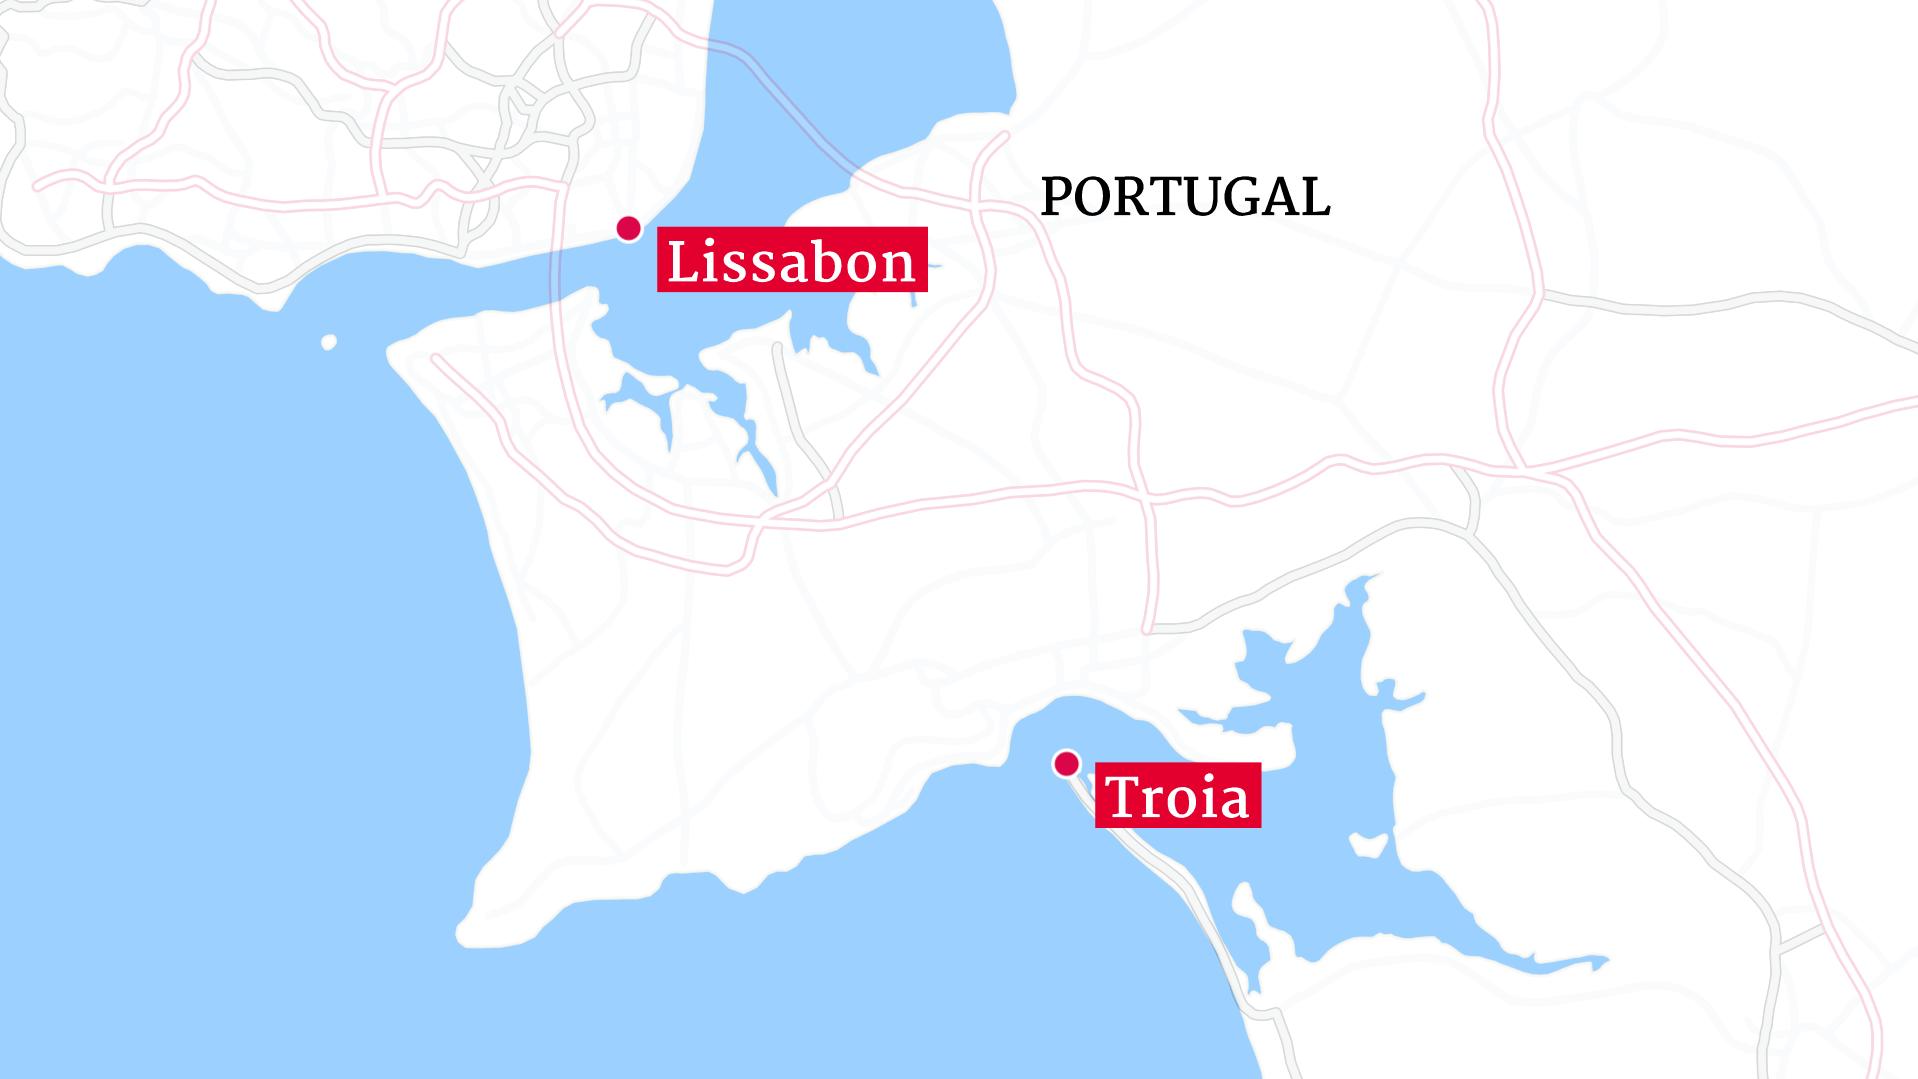 Der Unfall soll sich auf der portugiesischen Halbinsel Troia südlich von Lissabon ereignet haben.